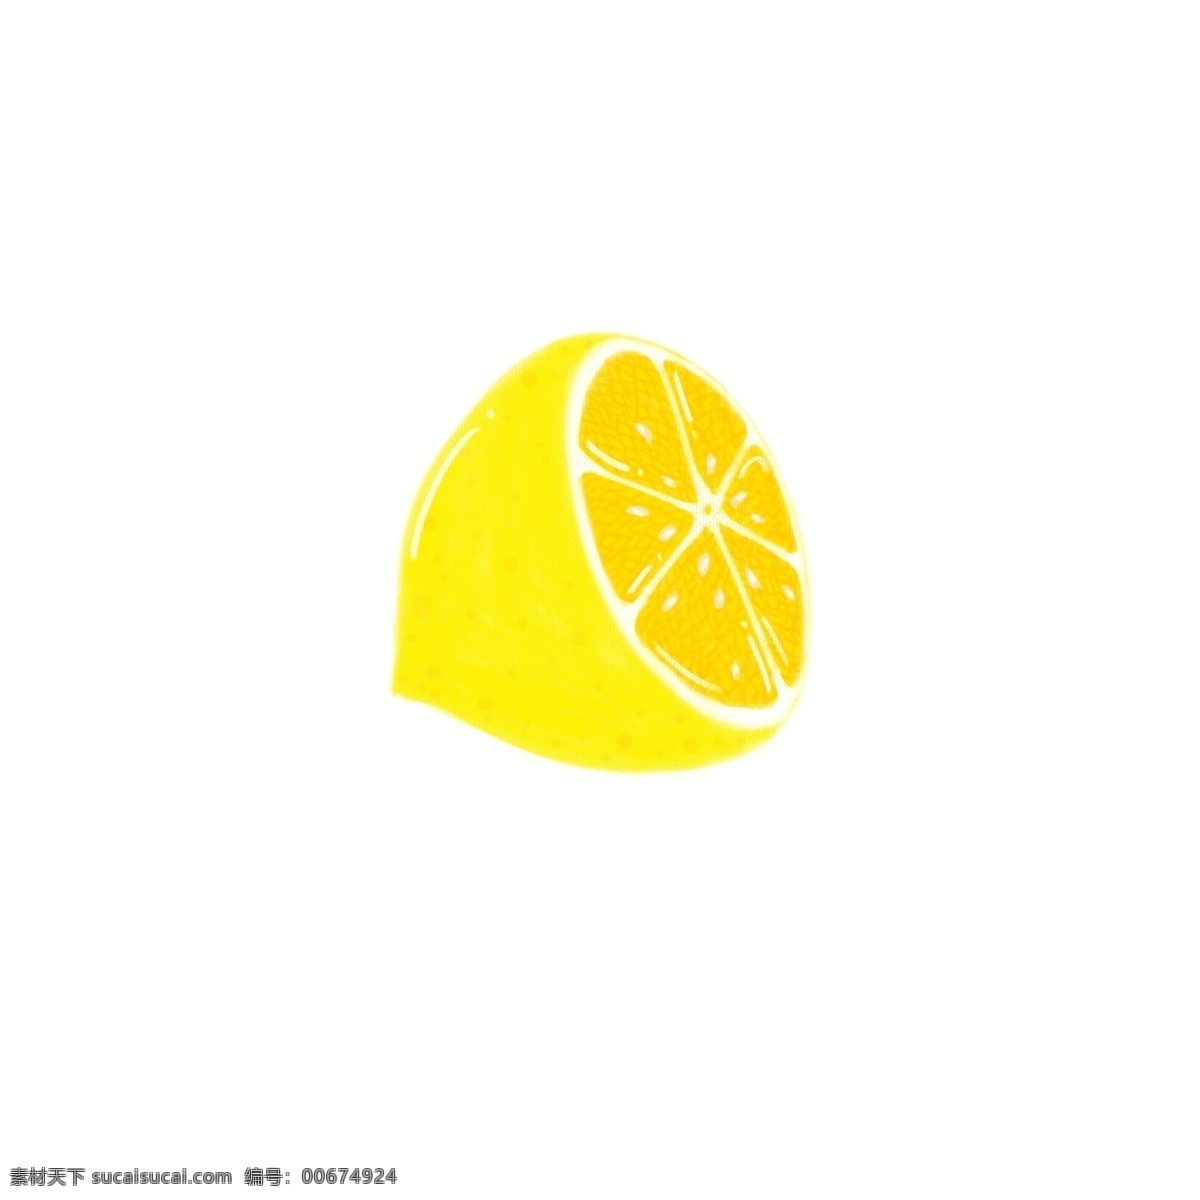 半个柠檬 黄色 柠檬 可爱 清新 水果 酸味